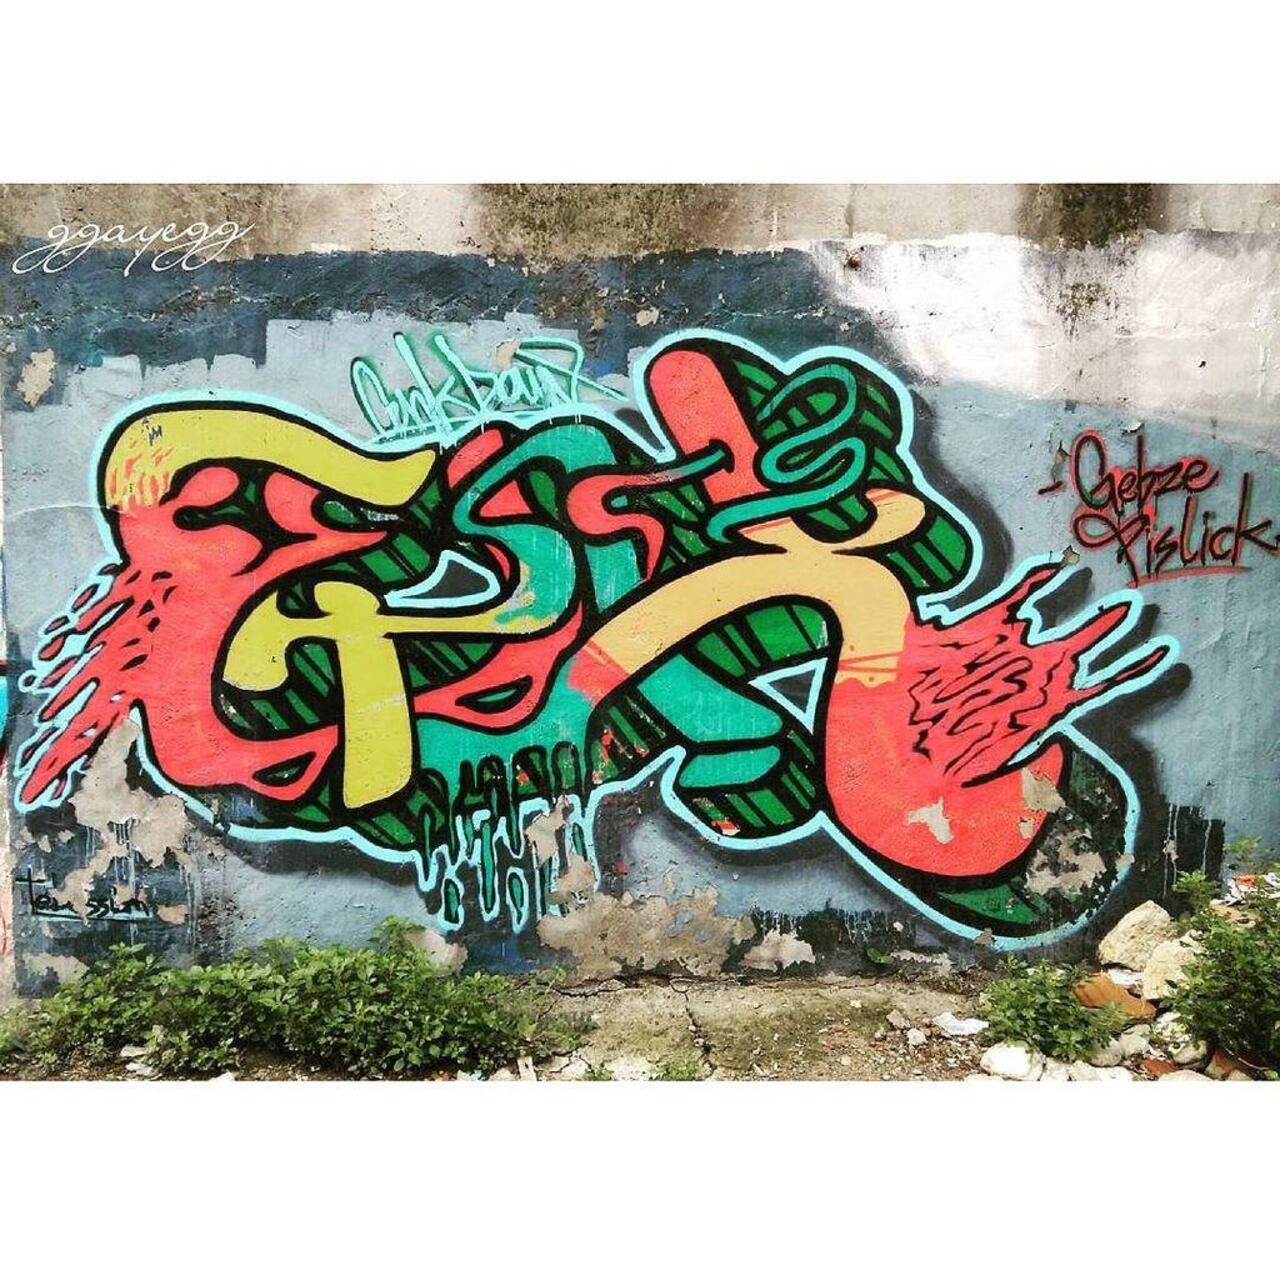 #gebze @dsb_graff #dsb_graff @rsa_graffiti @streetawesome #streetart #urbanart #graffitiart #graffiti #streetartist… http://t.co/cmU3QnBJVN